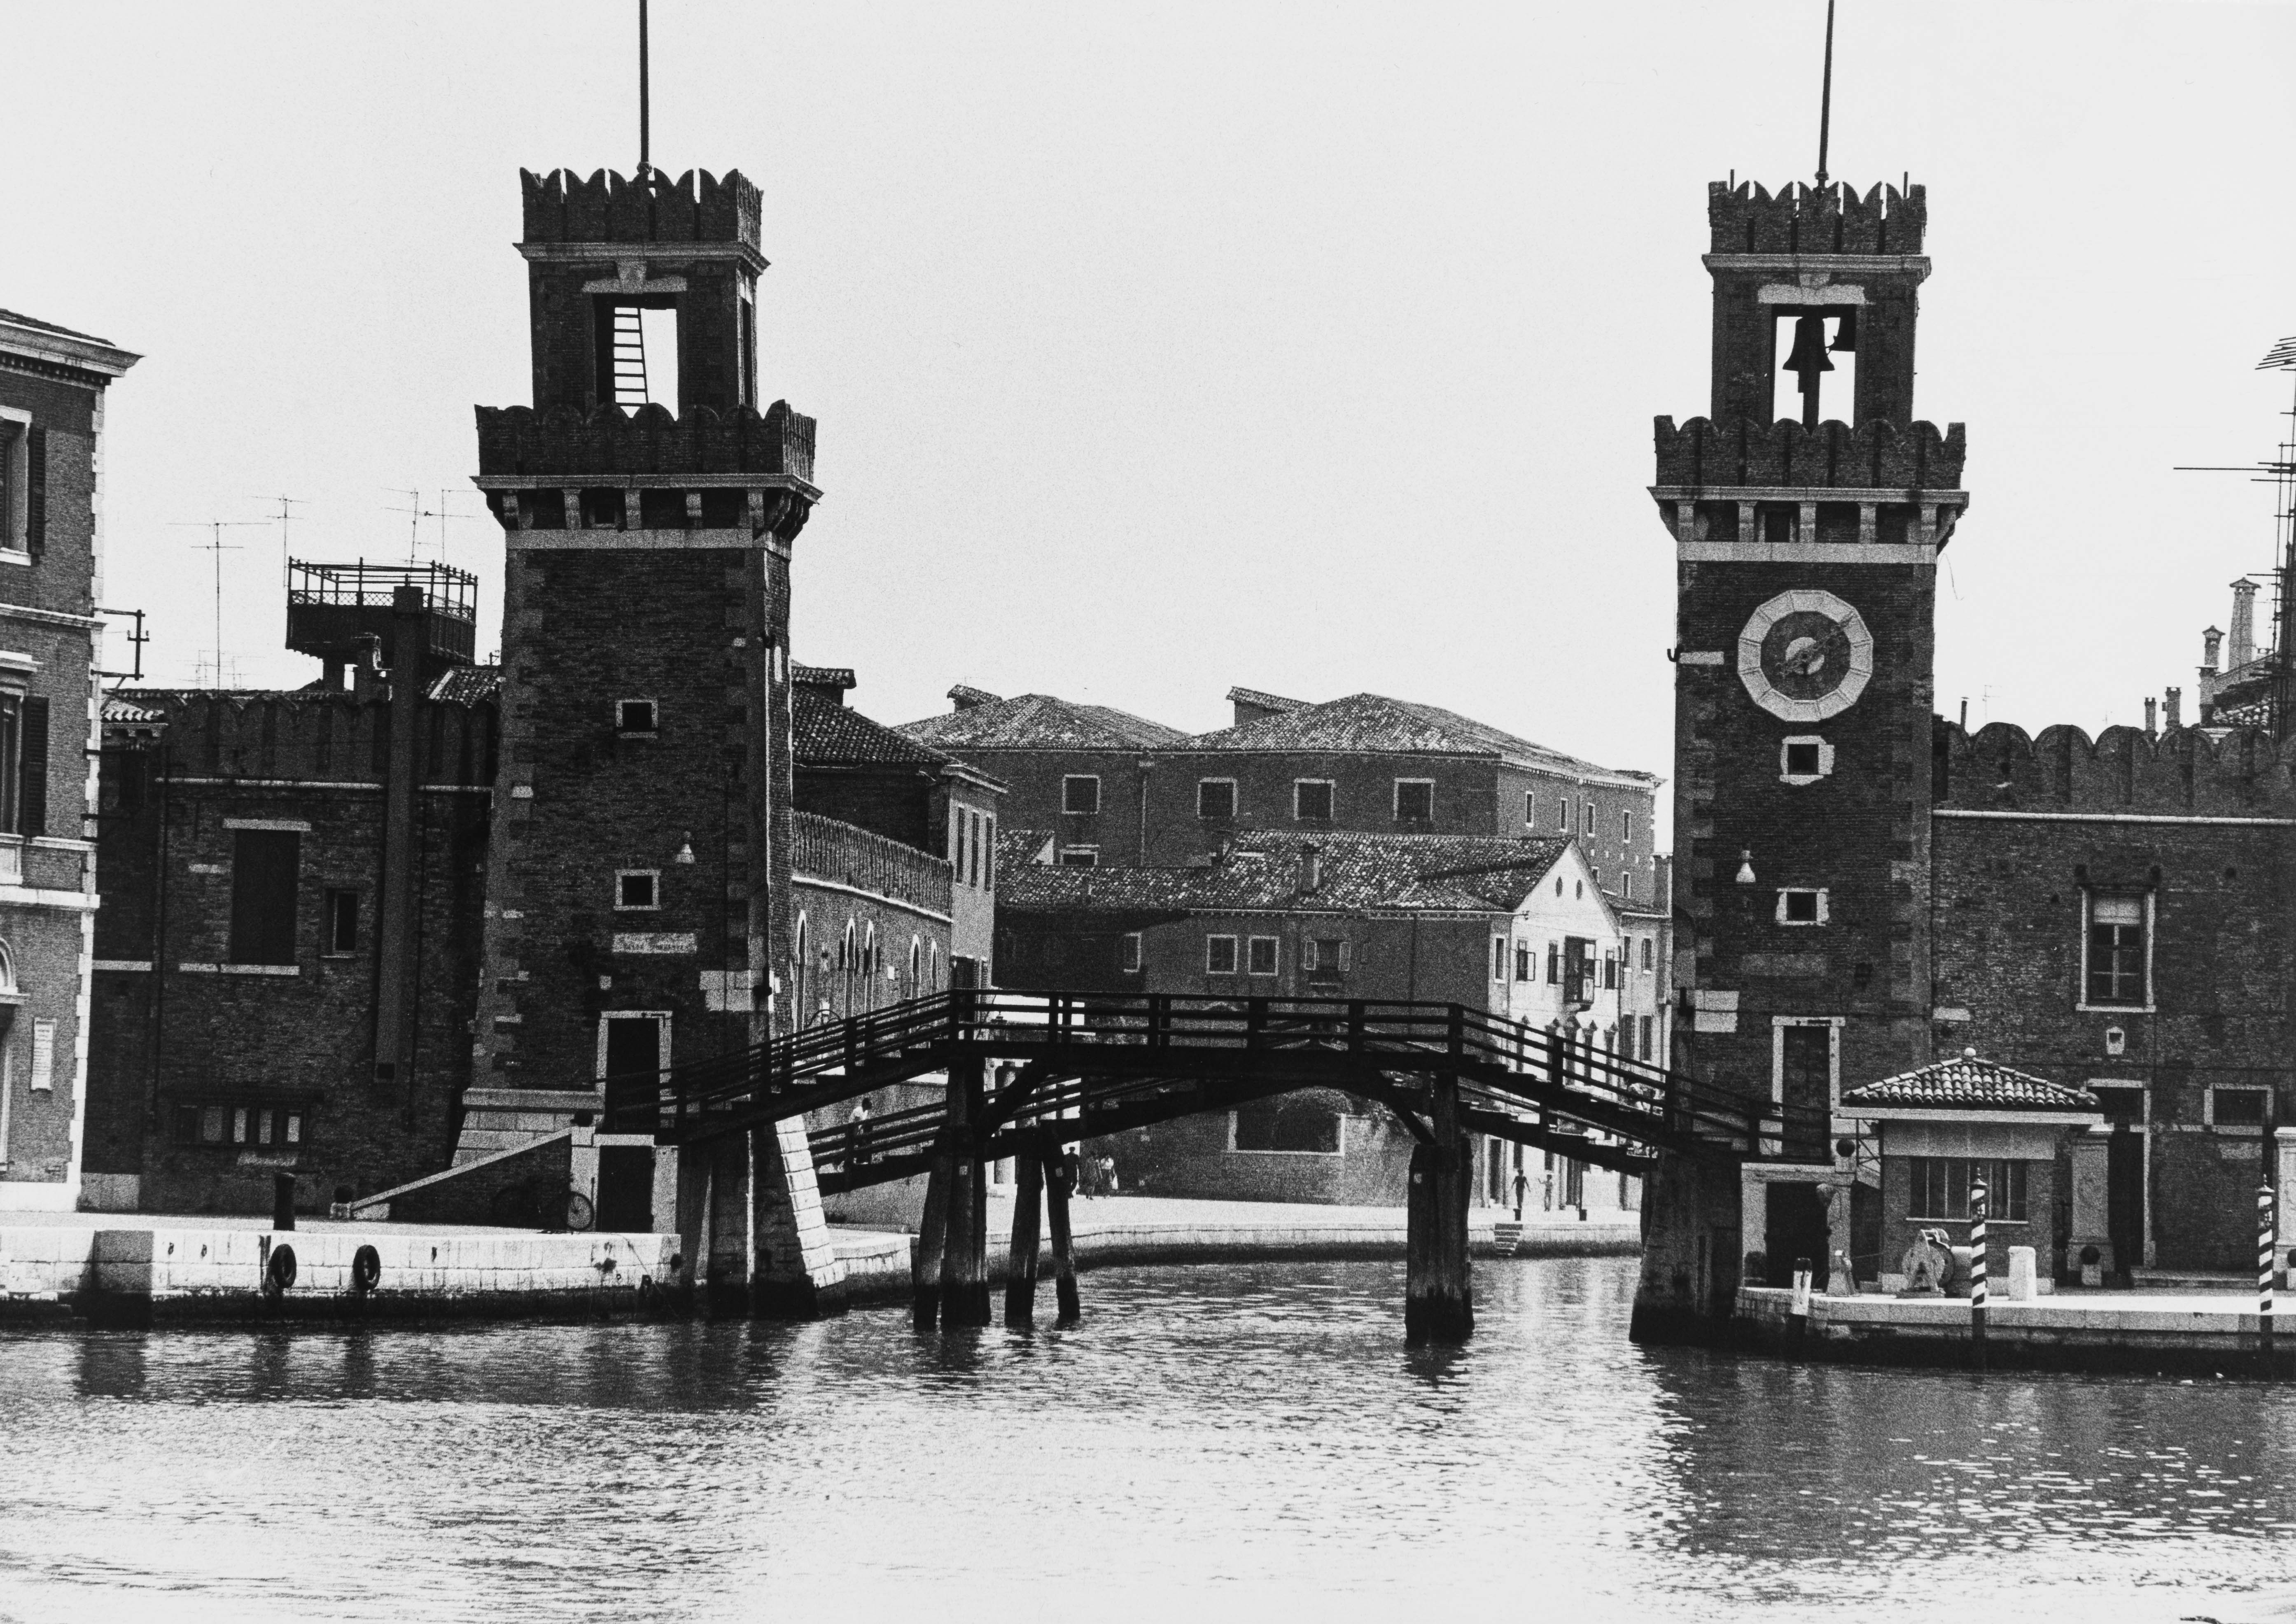 Venice by Gianni Berengo Gardin, years 1960